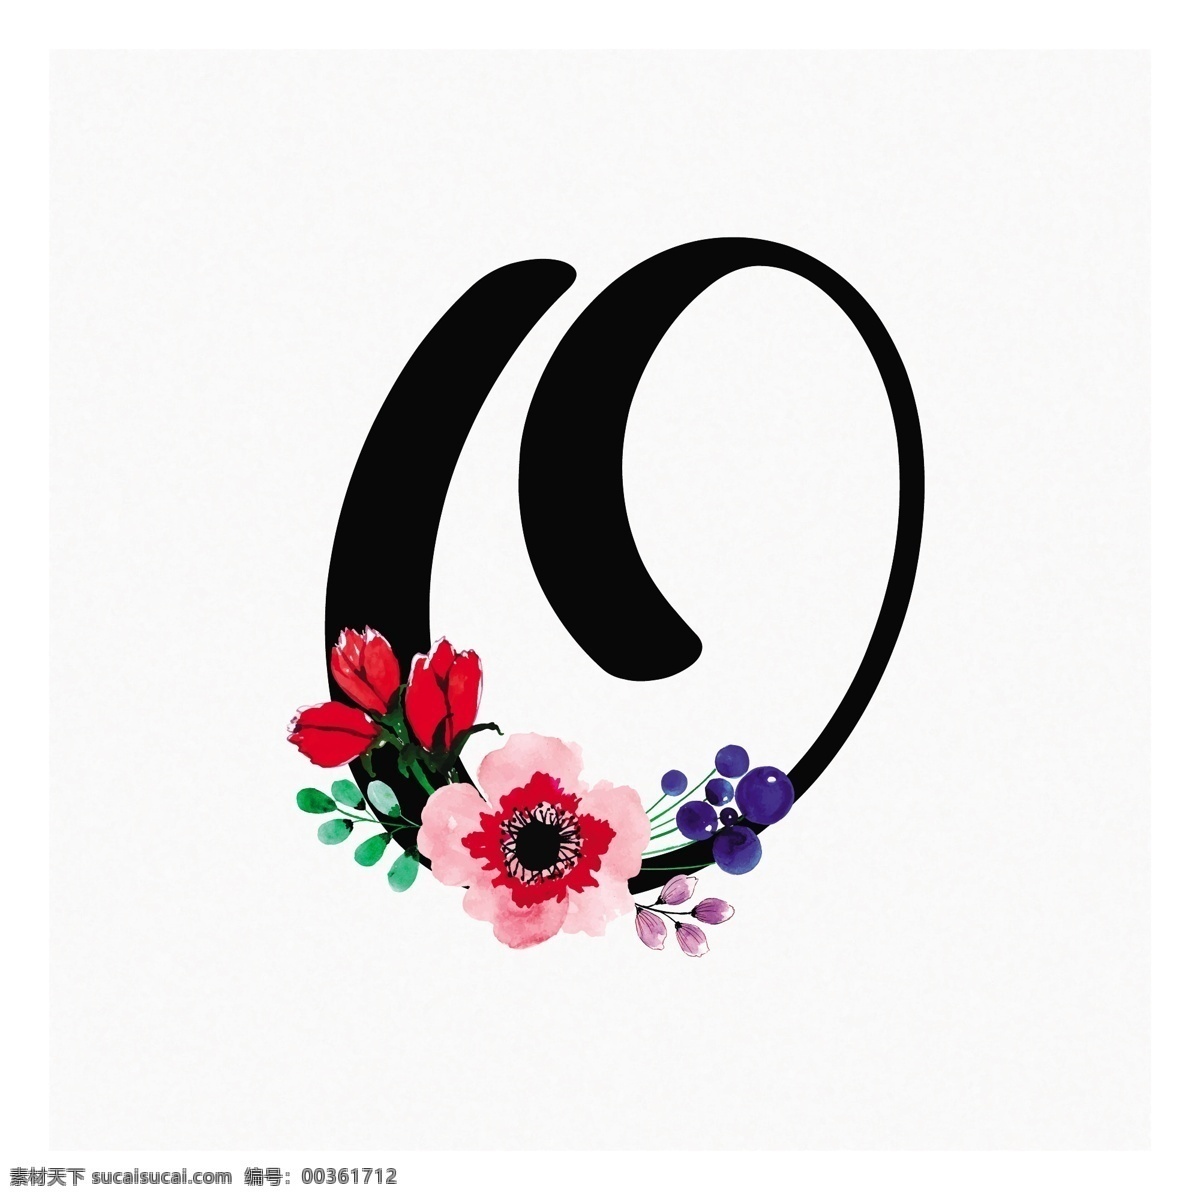 抽象 o 形状 花朵 logo 模板 字母 花卉 商标 标志 logo模板 水彩